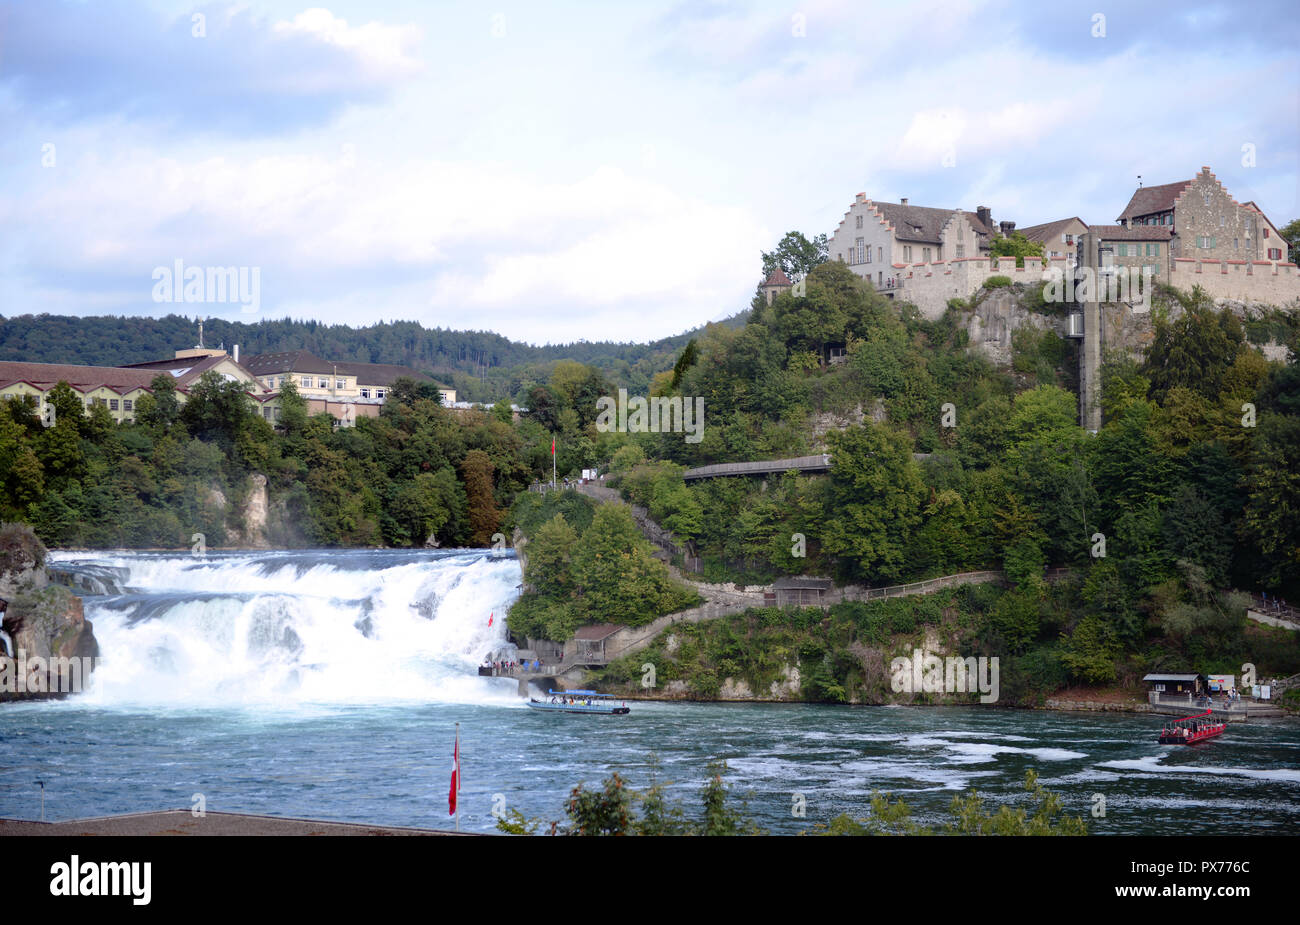 Rhinefalls on Rhine river near Schaffhausen, Switzerland Stock Photo